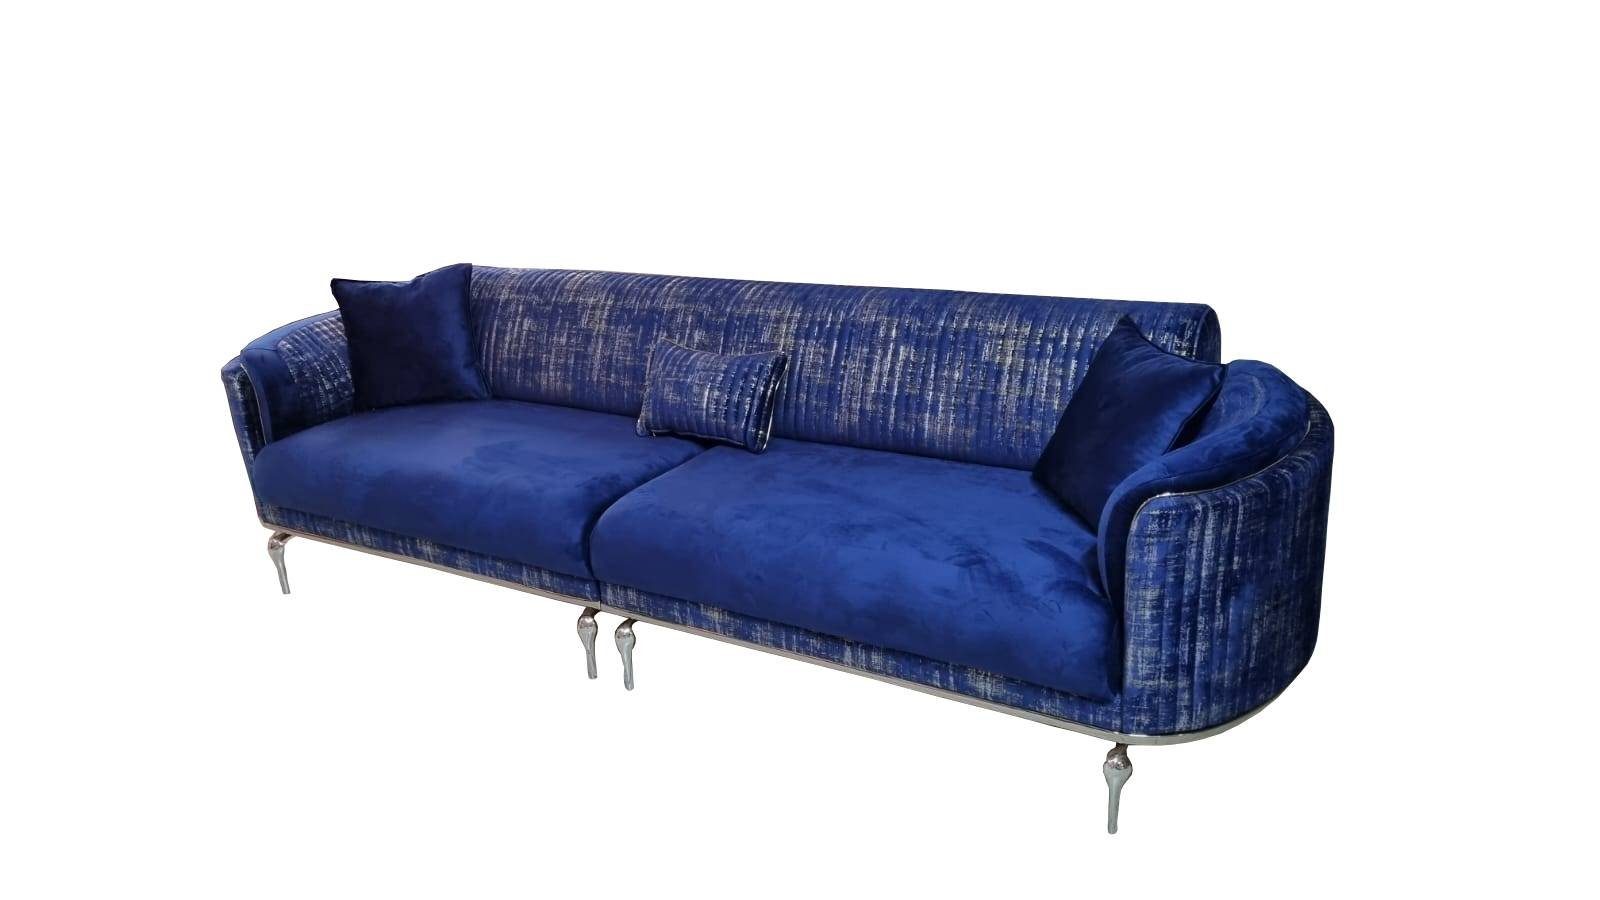 JVmoebel 3-Sitzer Luxus Sofa 3 Sitzer Wohnzimmer Blau Modernes reisitzer Möbel, Made in Europe